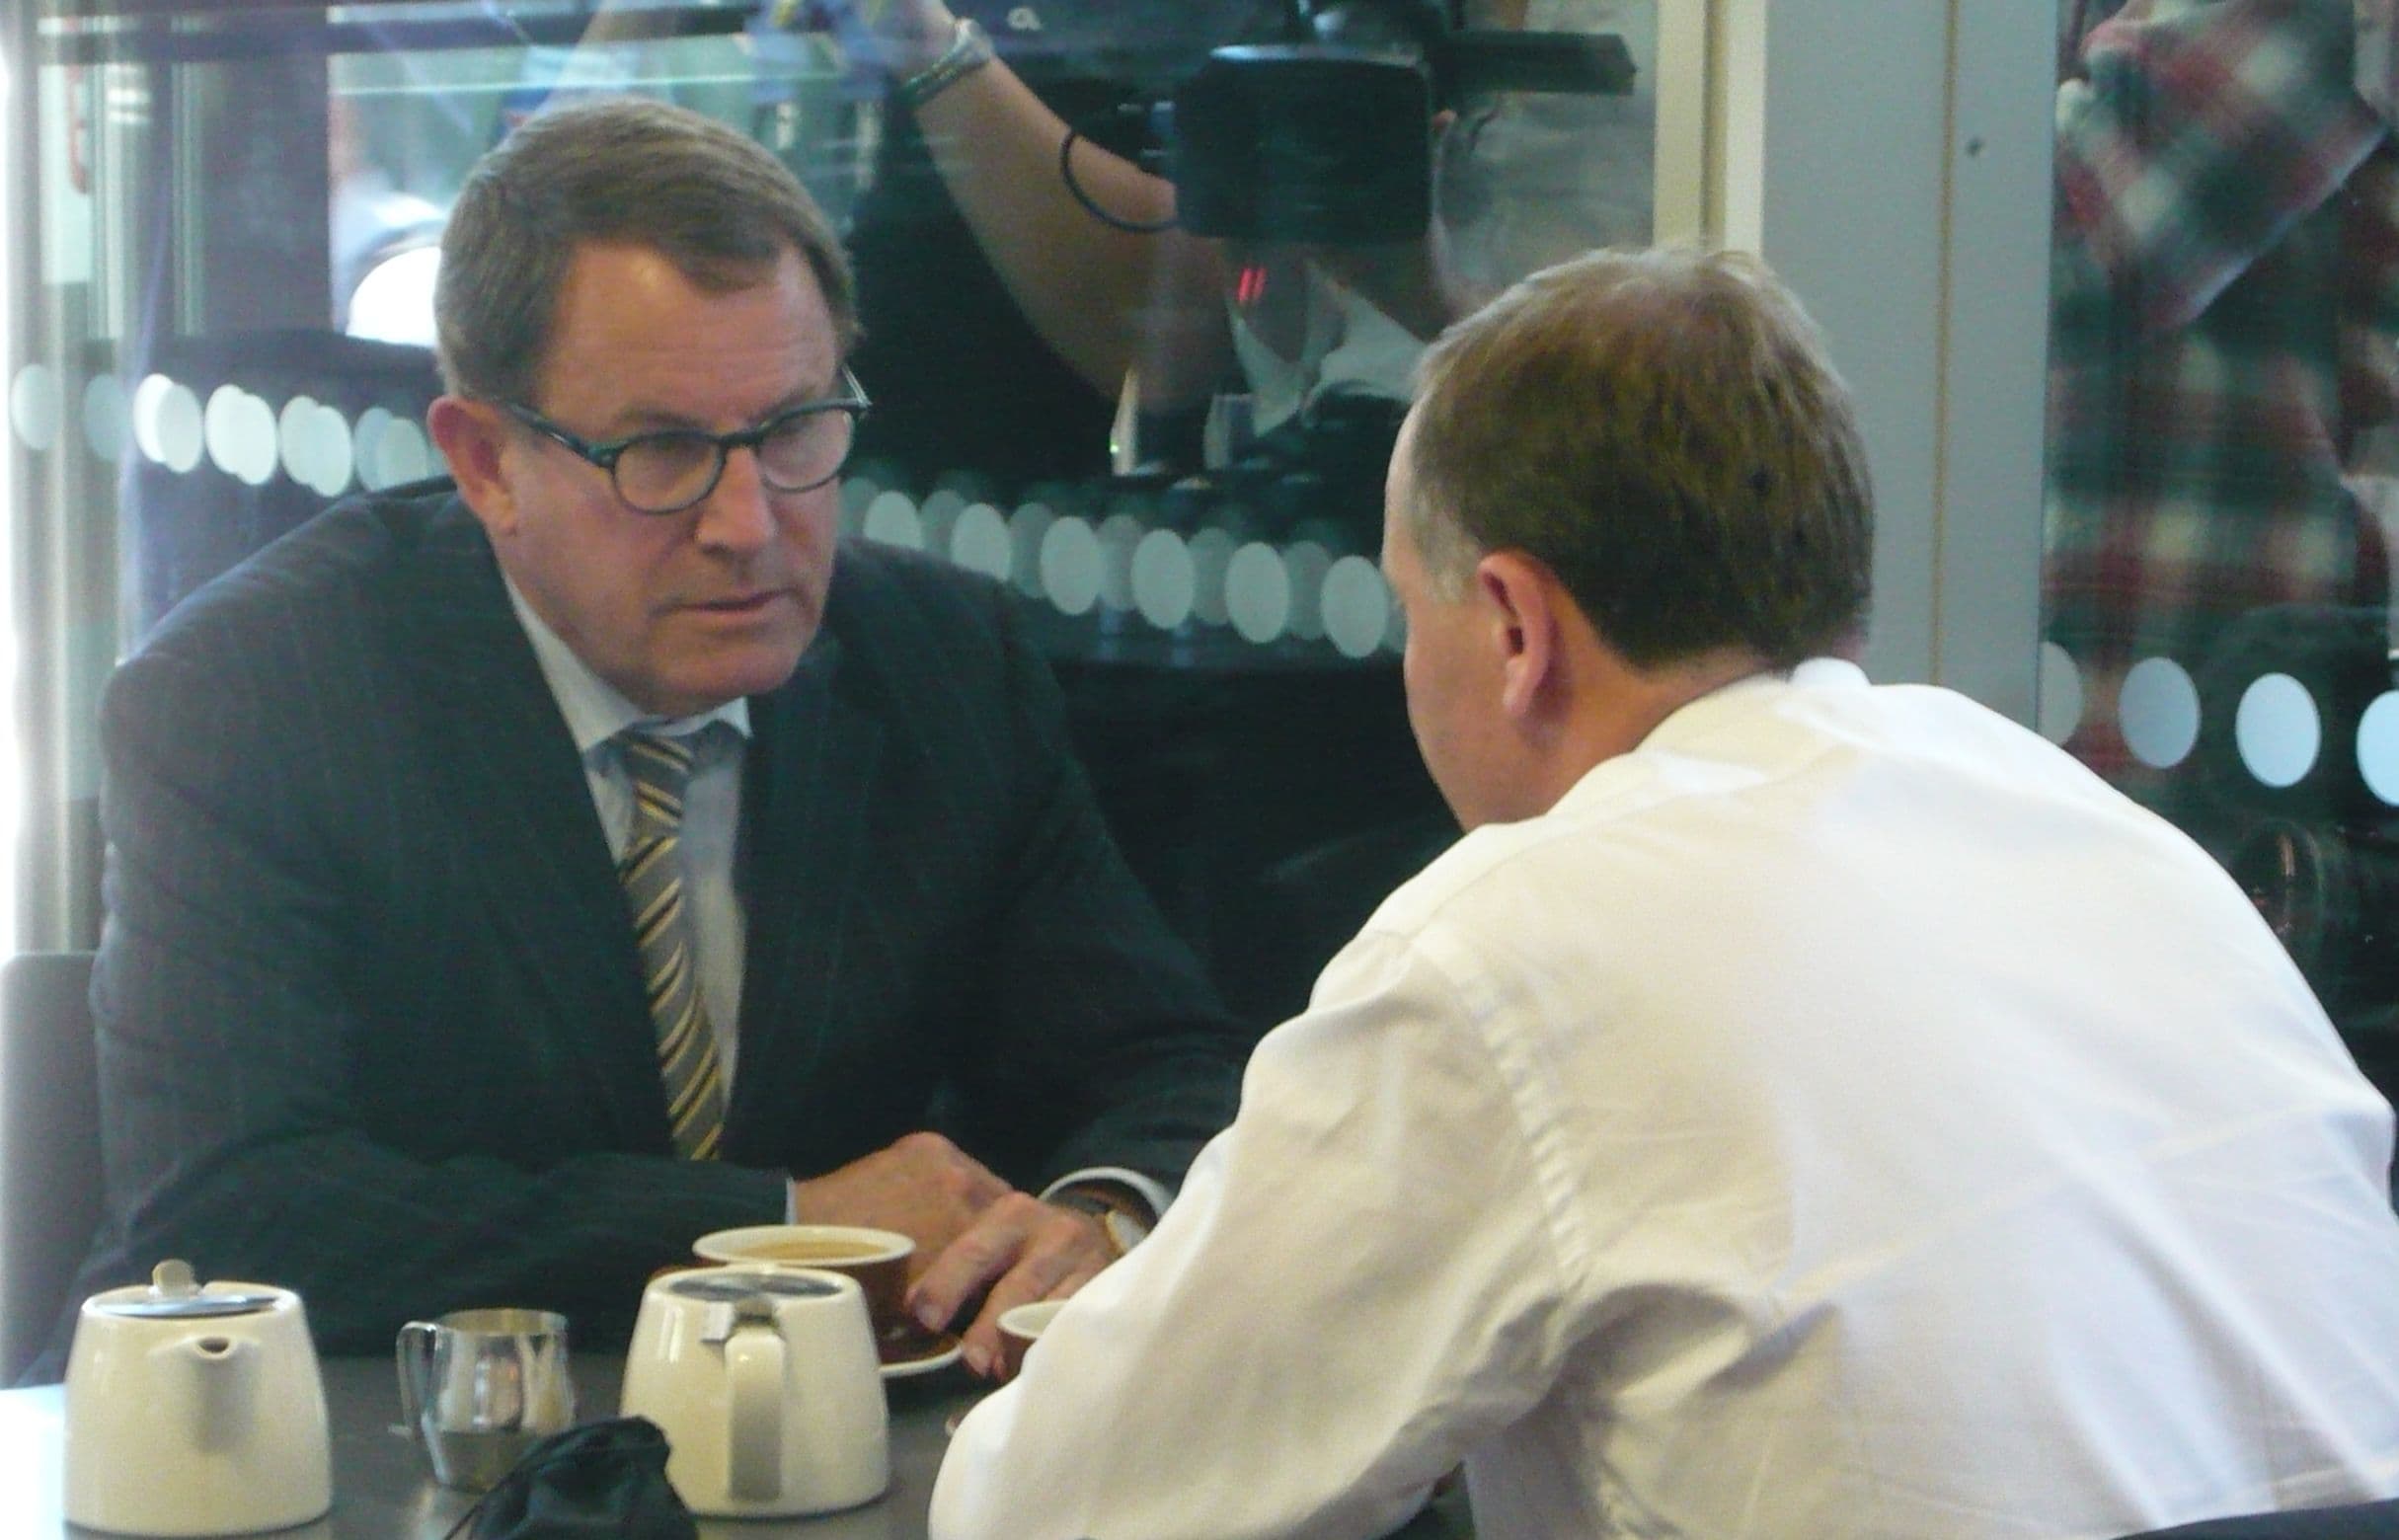 John Banks and John Key at the cafe in November 2011.